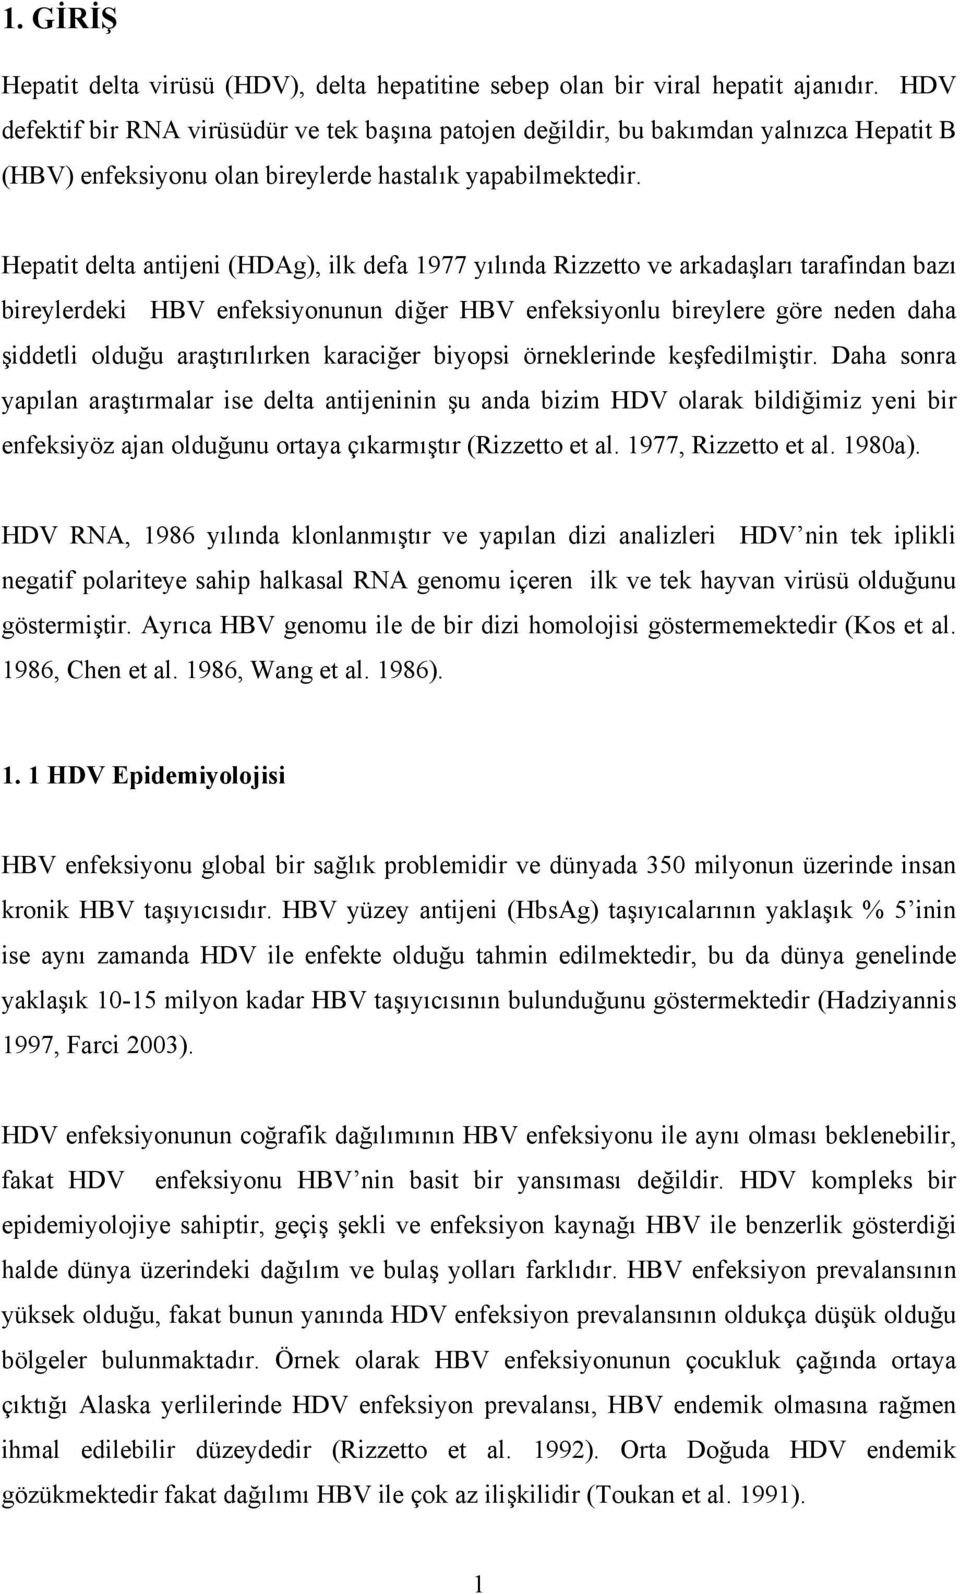 Hepatit delta antijeni (HDAg), ilk defa 1977 yılında Rizzetto ve arkadaşları tarafindan bazı bireylerdeki HBV enfeksiyonunun diğer HBV enfeksiyonlu bireylere göre neden daha şiddetli olduğu